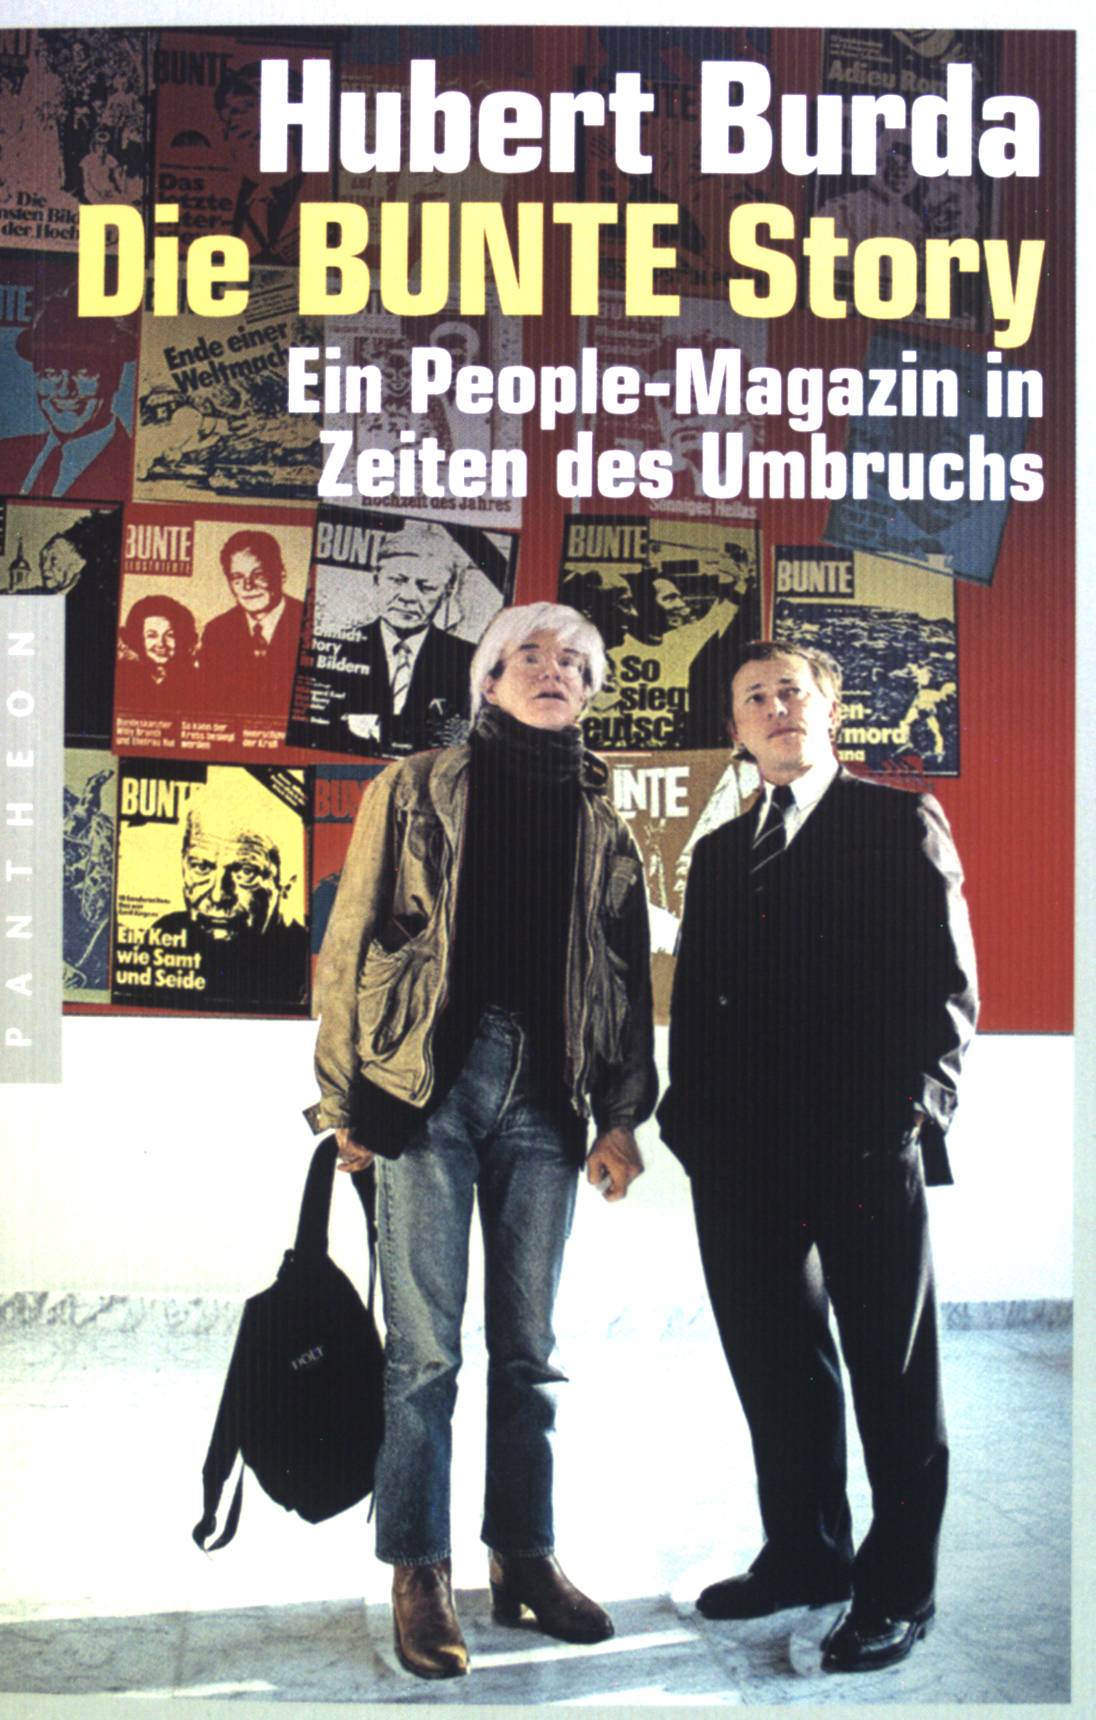 Die Bunte-Story : ein People-Magazin in Zeiten des Umbruchs. - Burda, Hubert